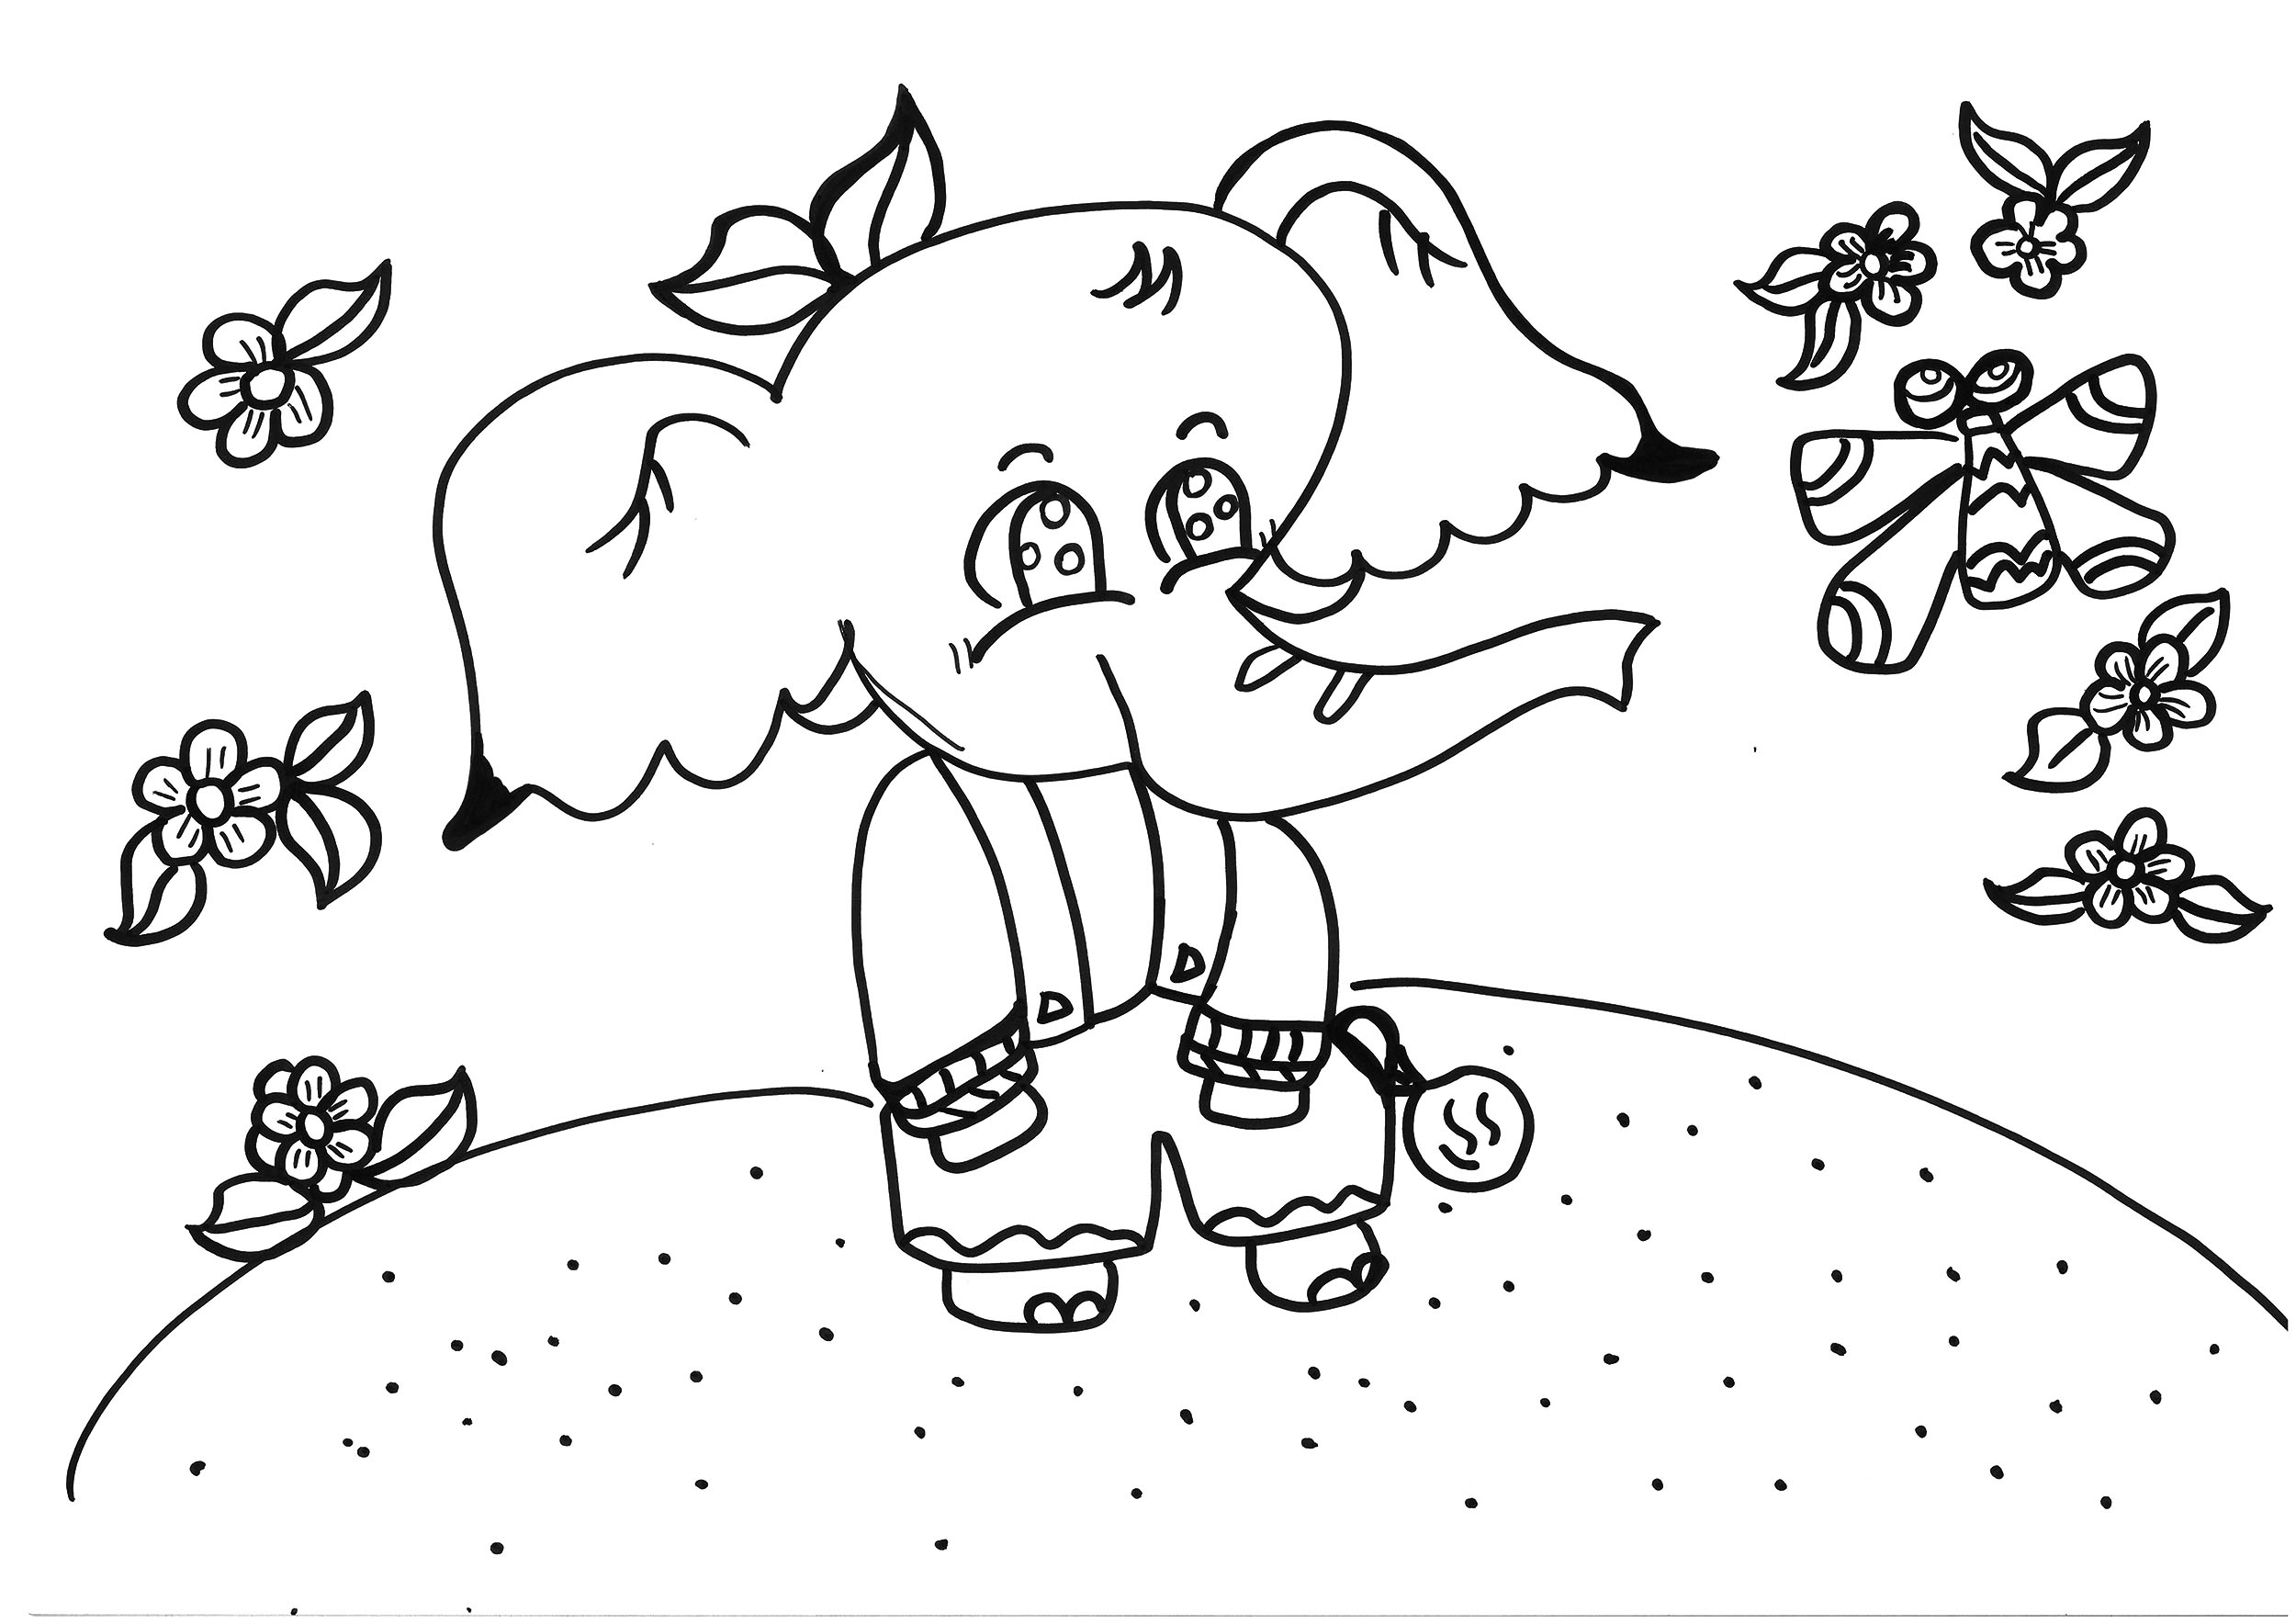 9岁可打印涂色画活动 小大象的故事上色大全